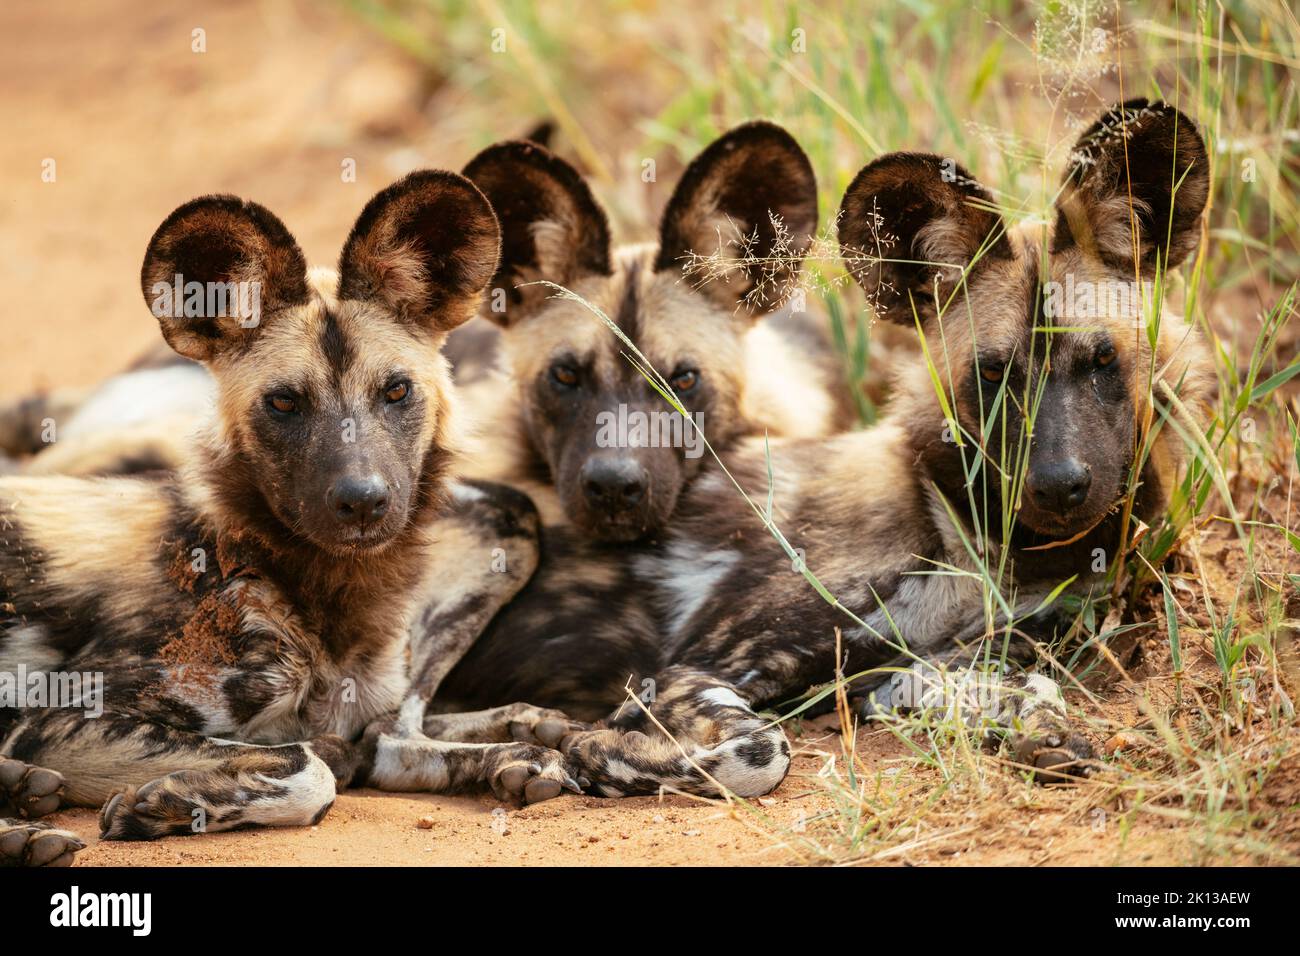 African Wild Dogs (Painted Wolves), réserve naturelle privée de Timbavati, parc national Kruger, Afrique du Sud, Afrique Banque D'Images